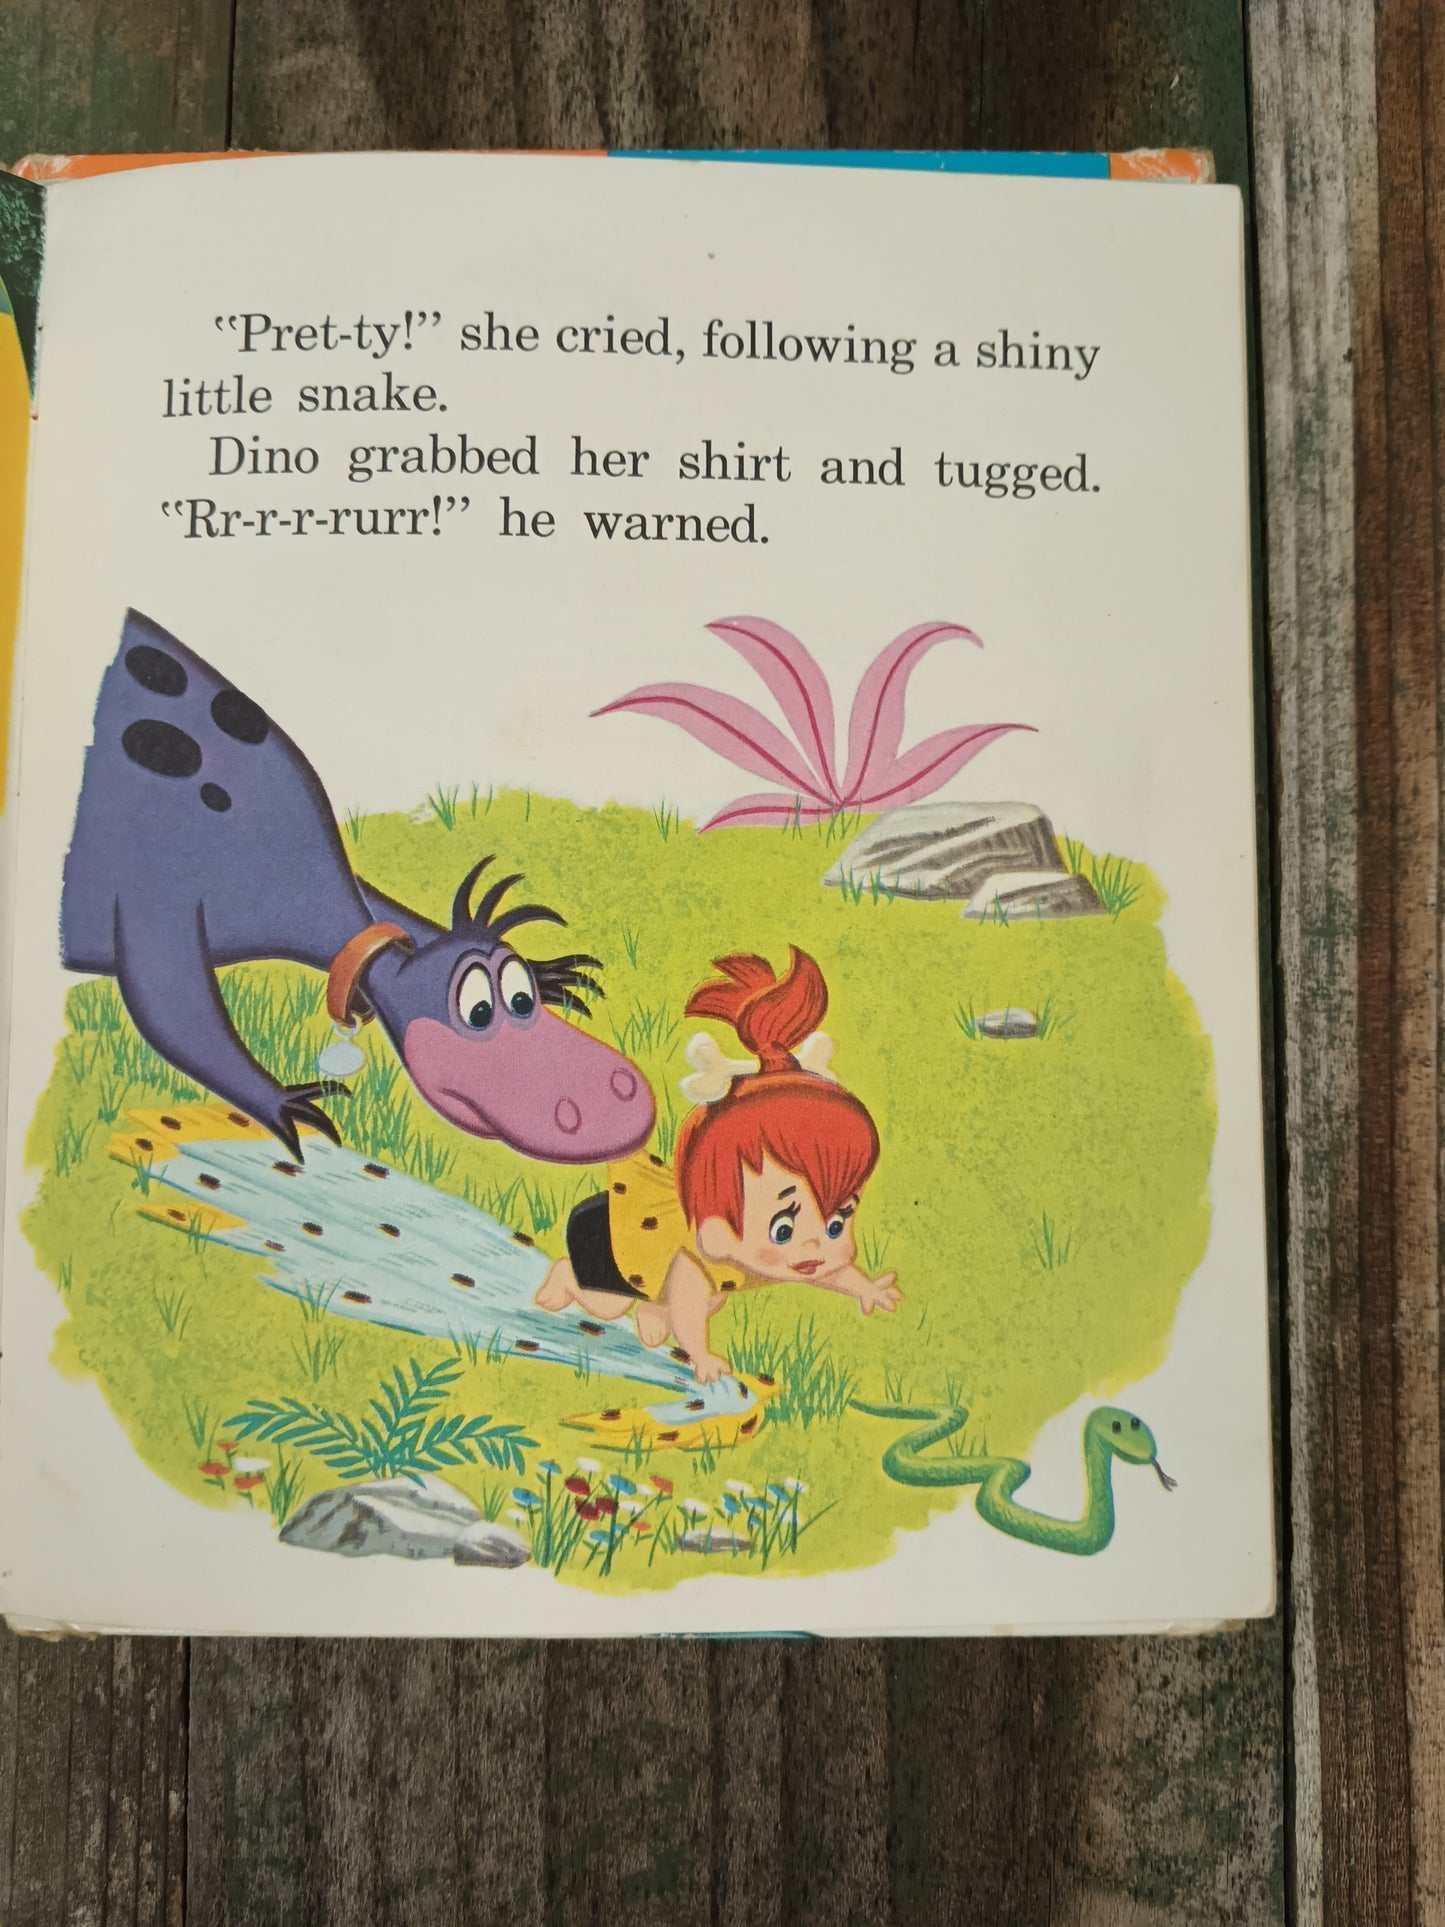 Fred Flintstone Bewildered Baby-Sitter